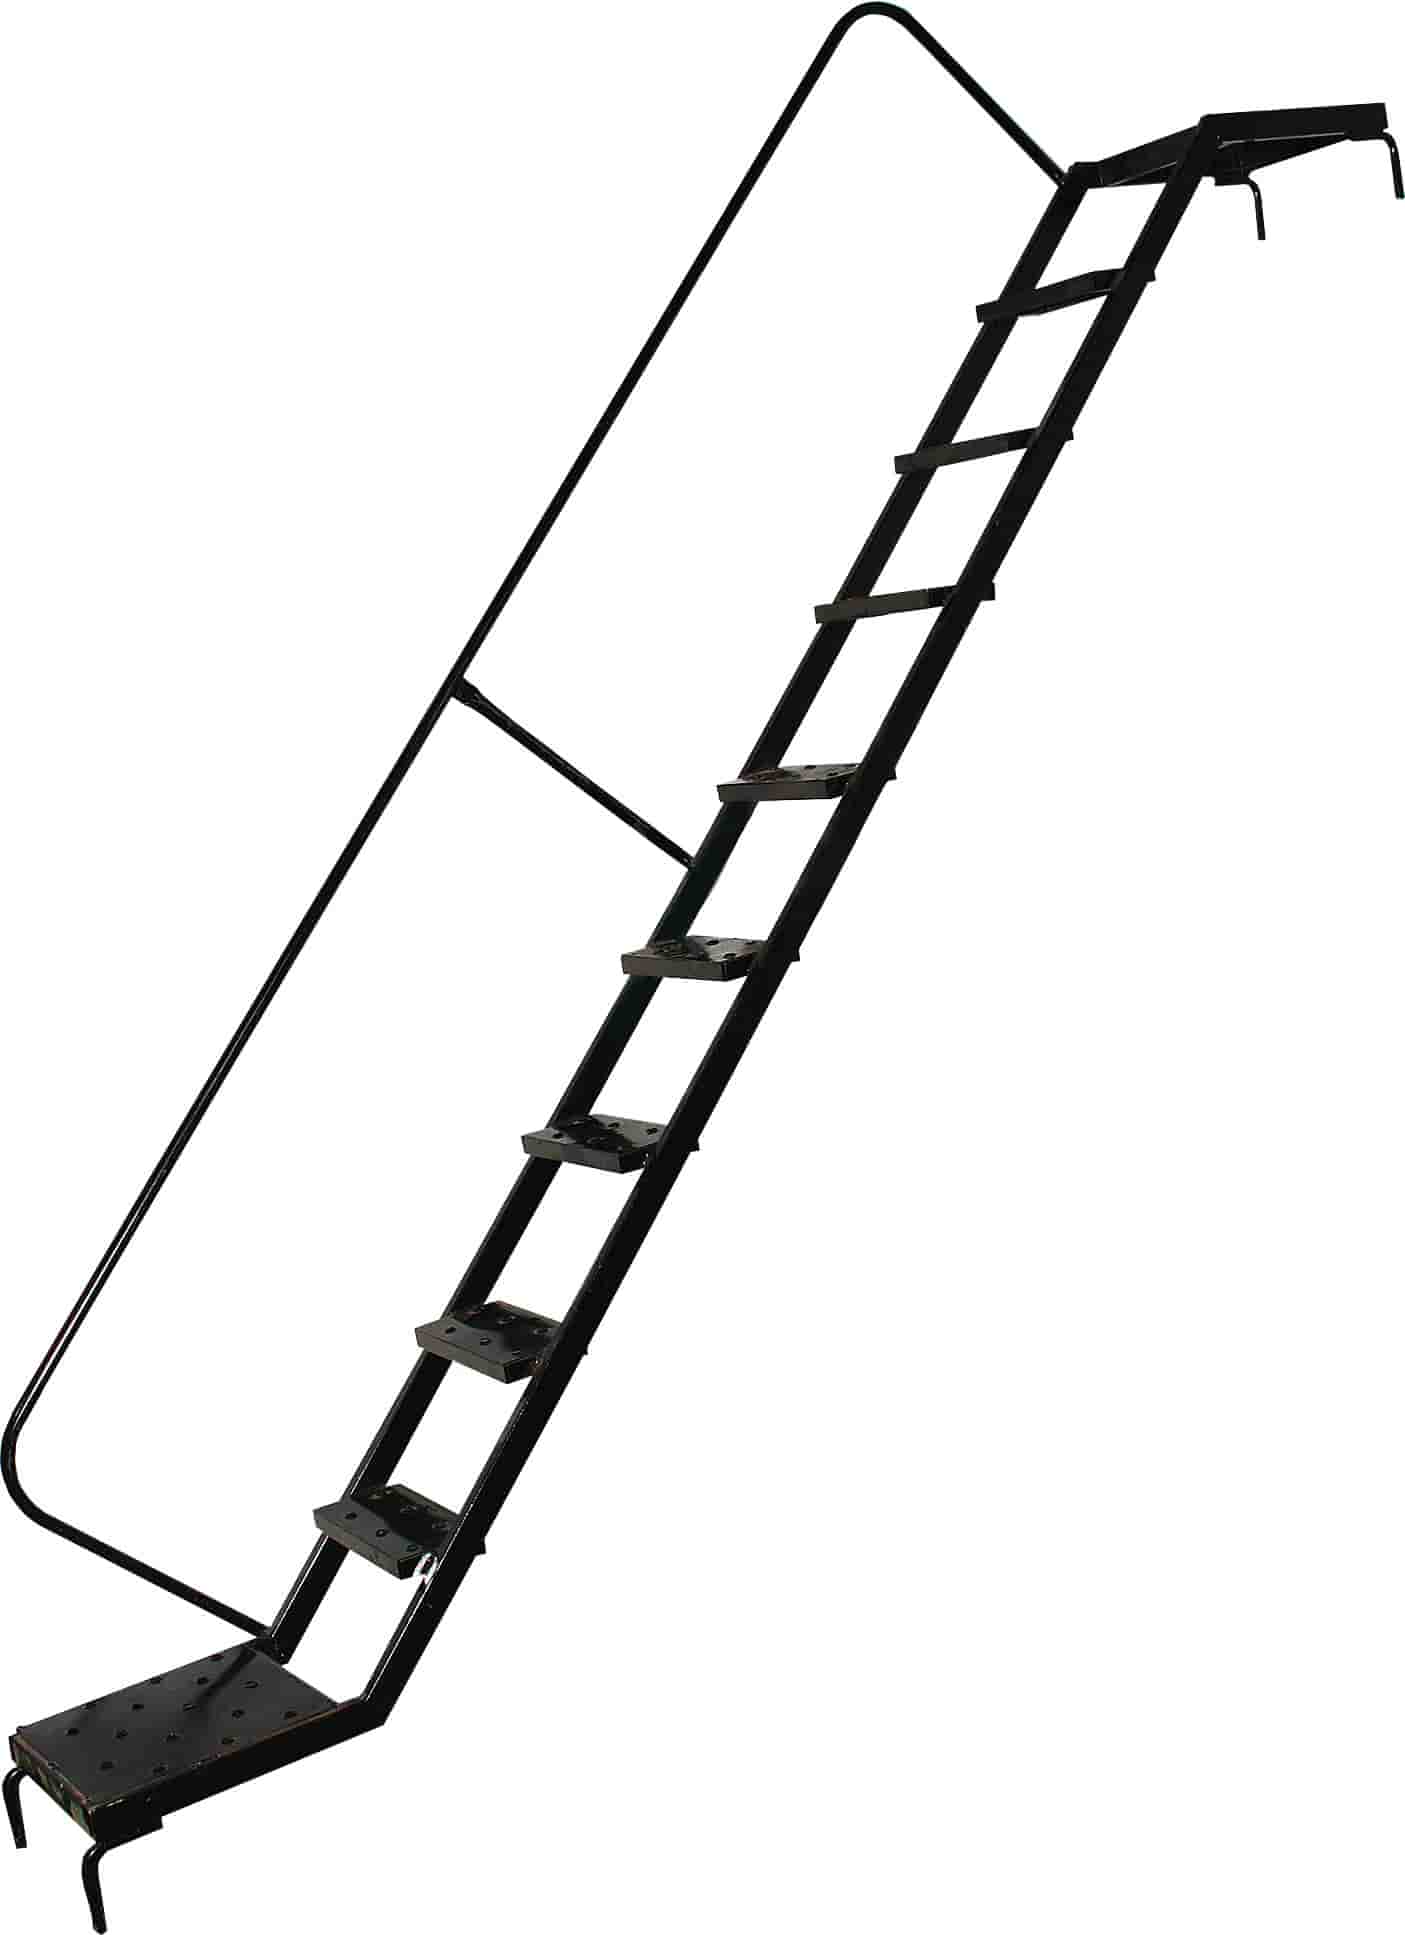 Дополнительное изображение ВТК-1 рабочая высота 6,7 м, размер площадки (1x2 м)